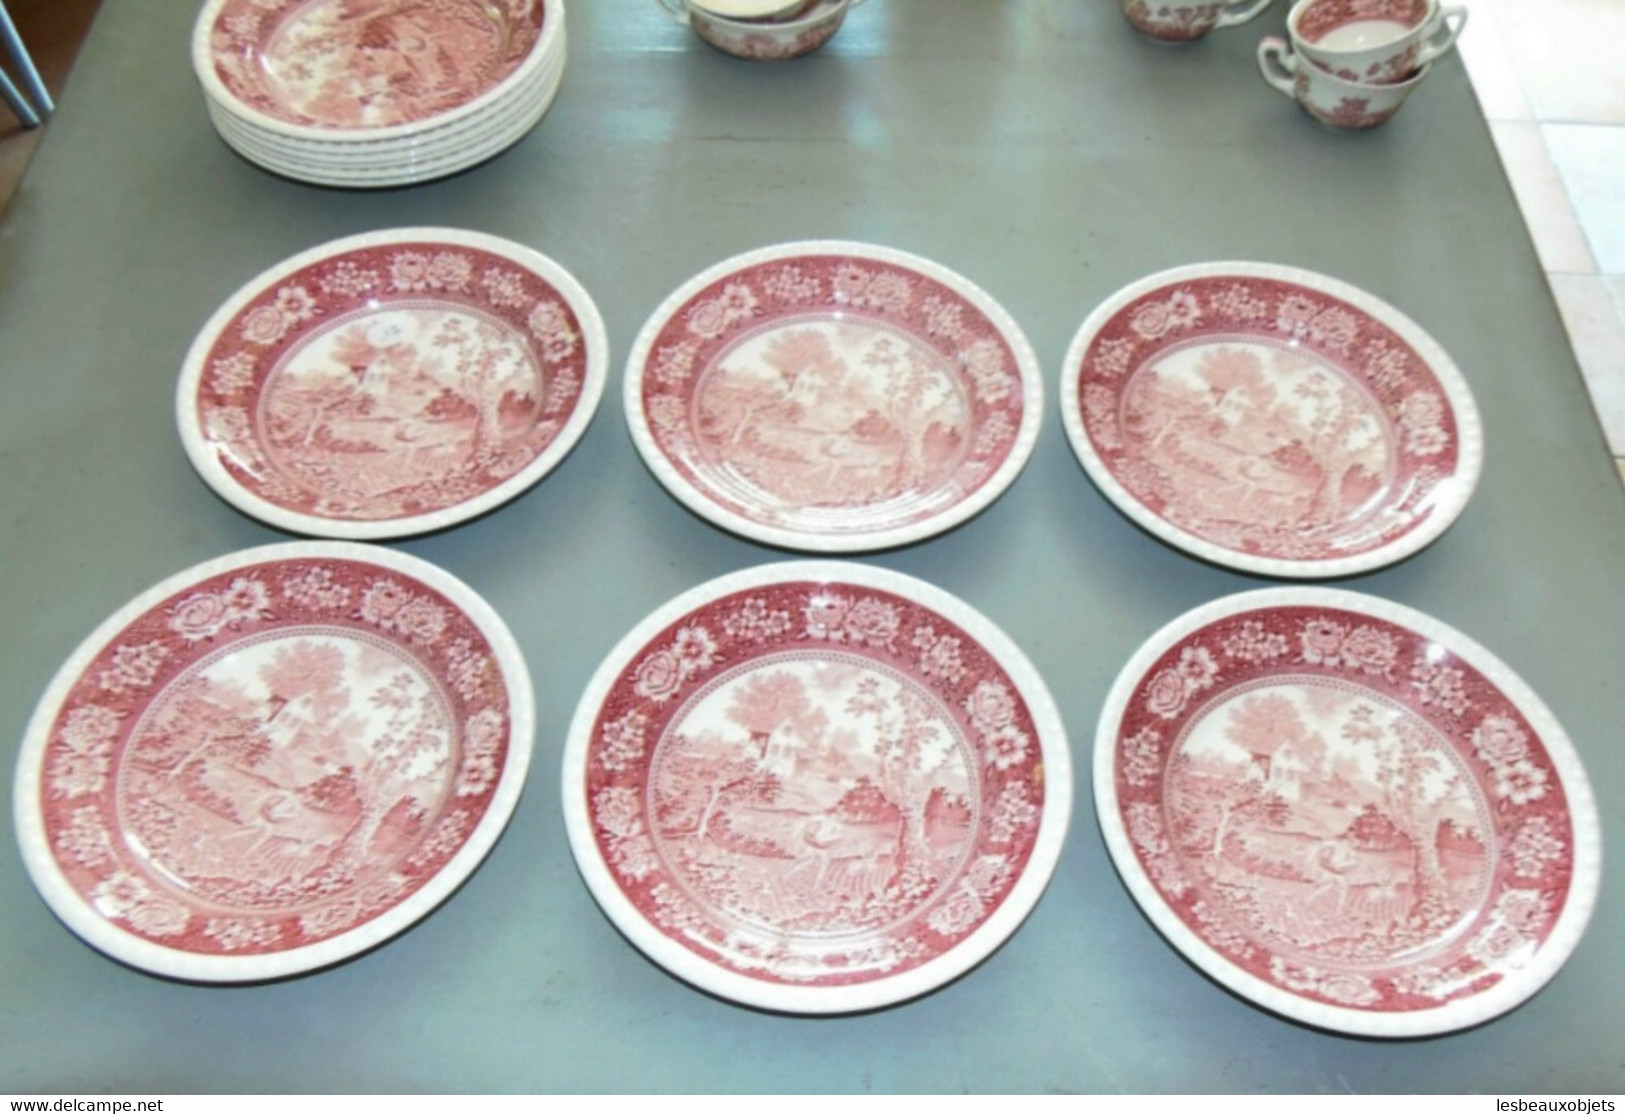 6 ASSIETTES CREUSES CERAMIQUE VILLEROY & BOCH V&B RUSTICANA rose déco TABLE N12 collection déco céramique vitrine